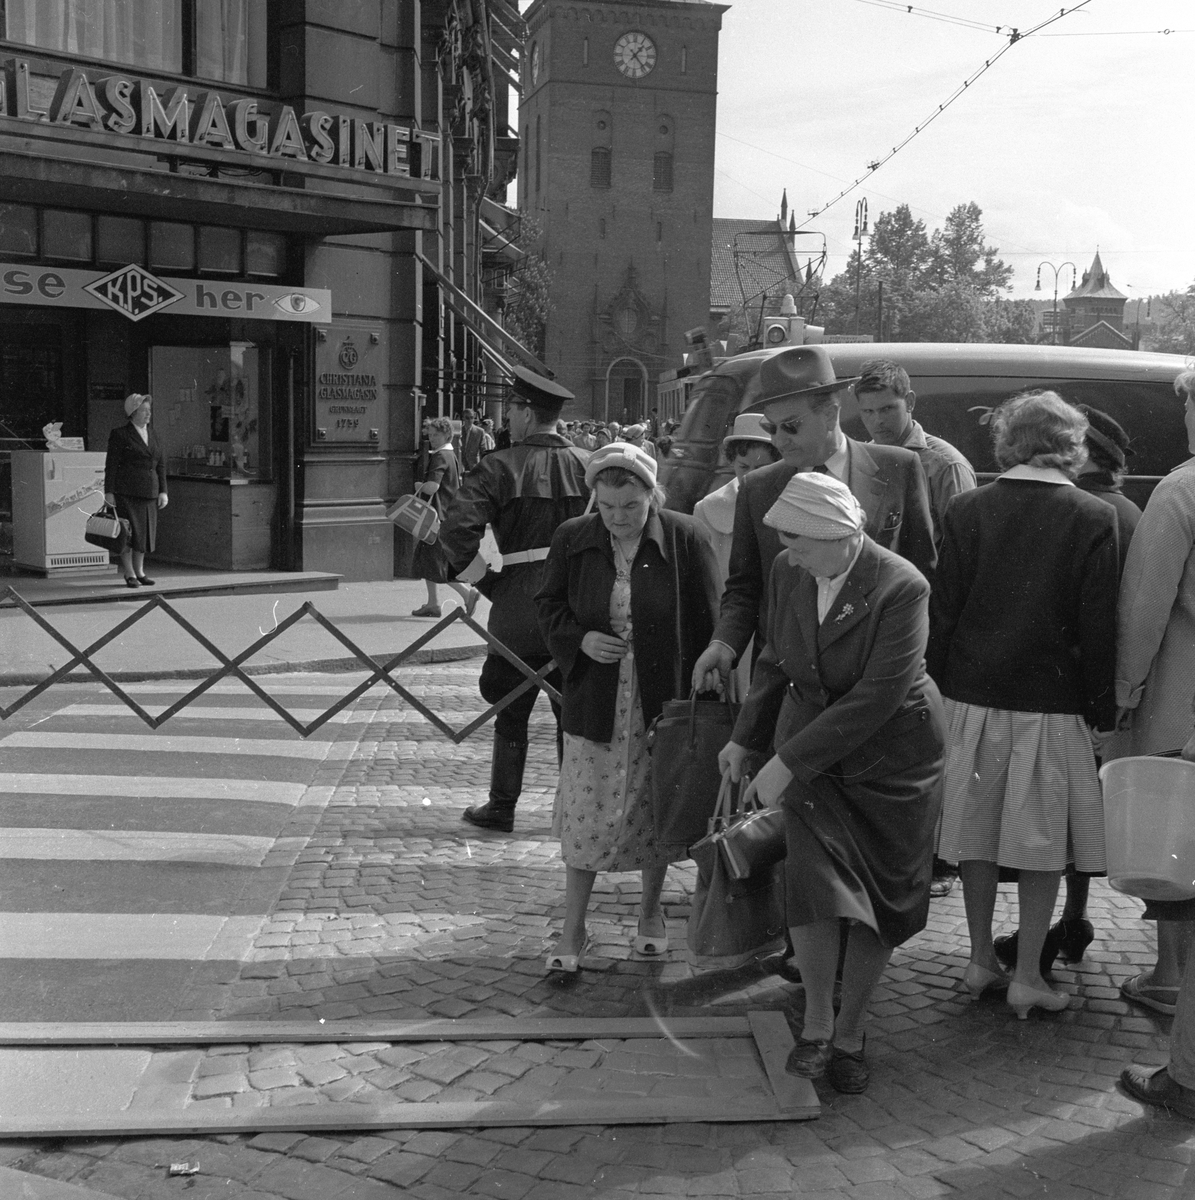 Fotgjengere går utenom nymalt fotgjengerfelt i krysset Møllergata og Stortorvet ved Glasmagasinet, Oslo. Fotografert mai 1959.